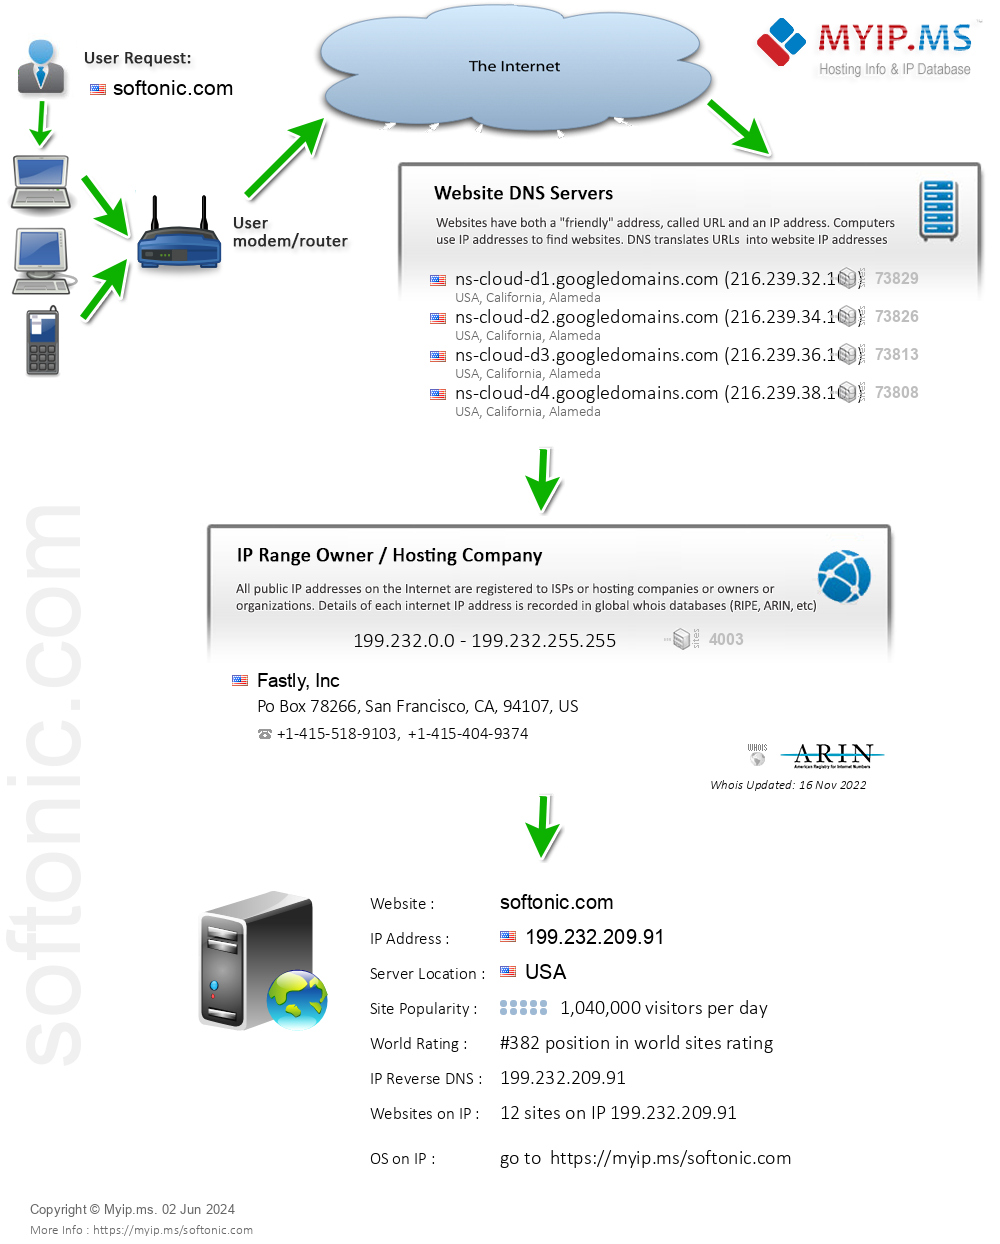 Softonic.com - Website Hosting Visual IP Diagram